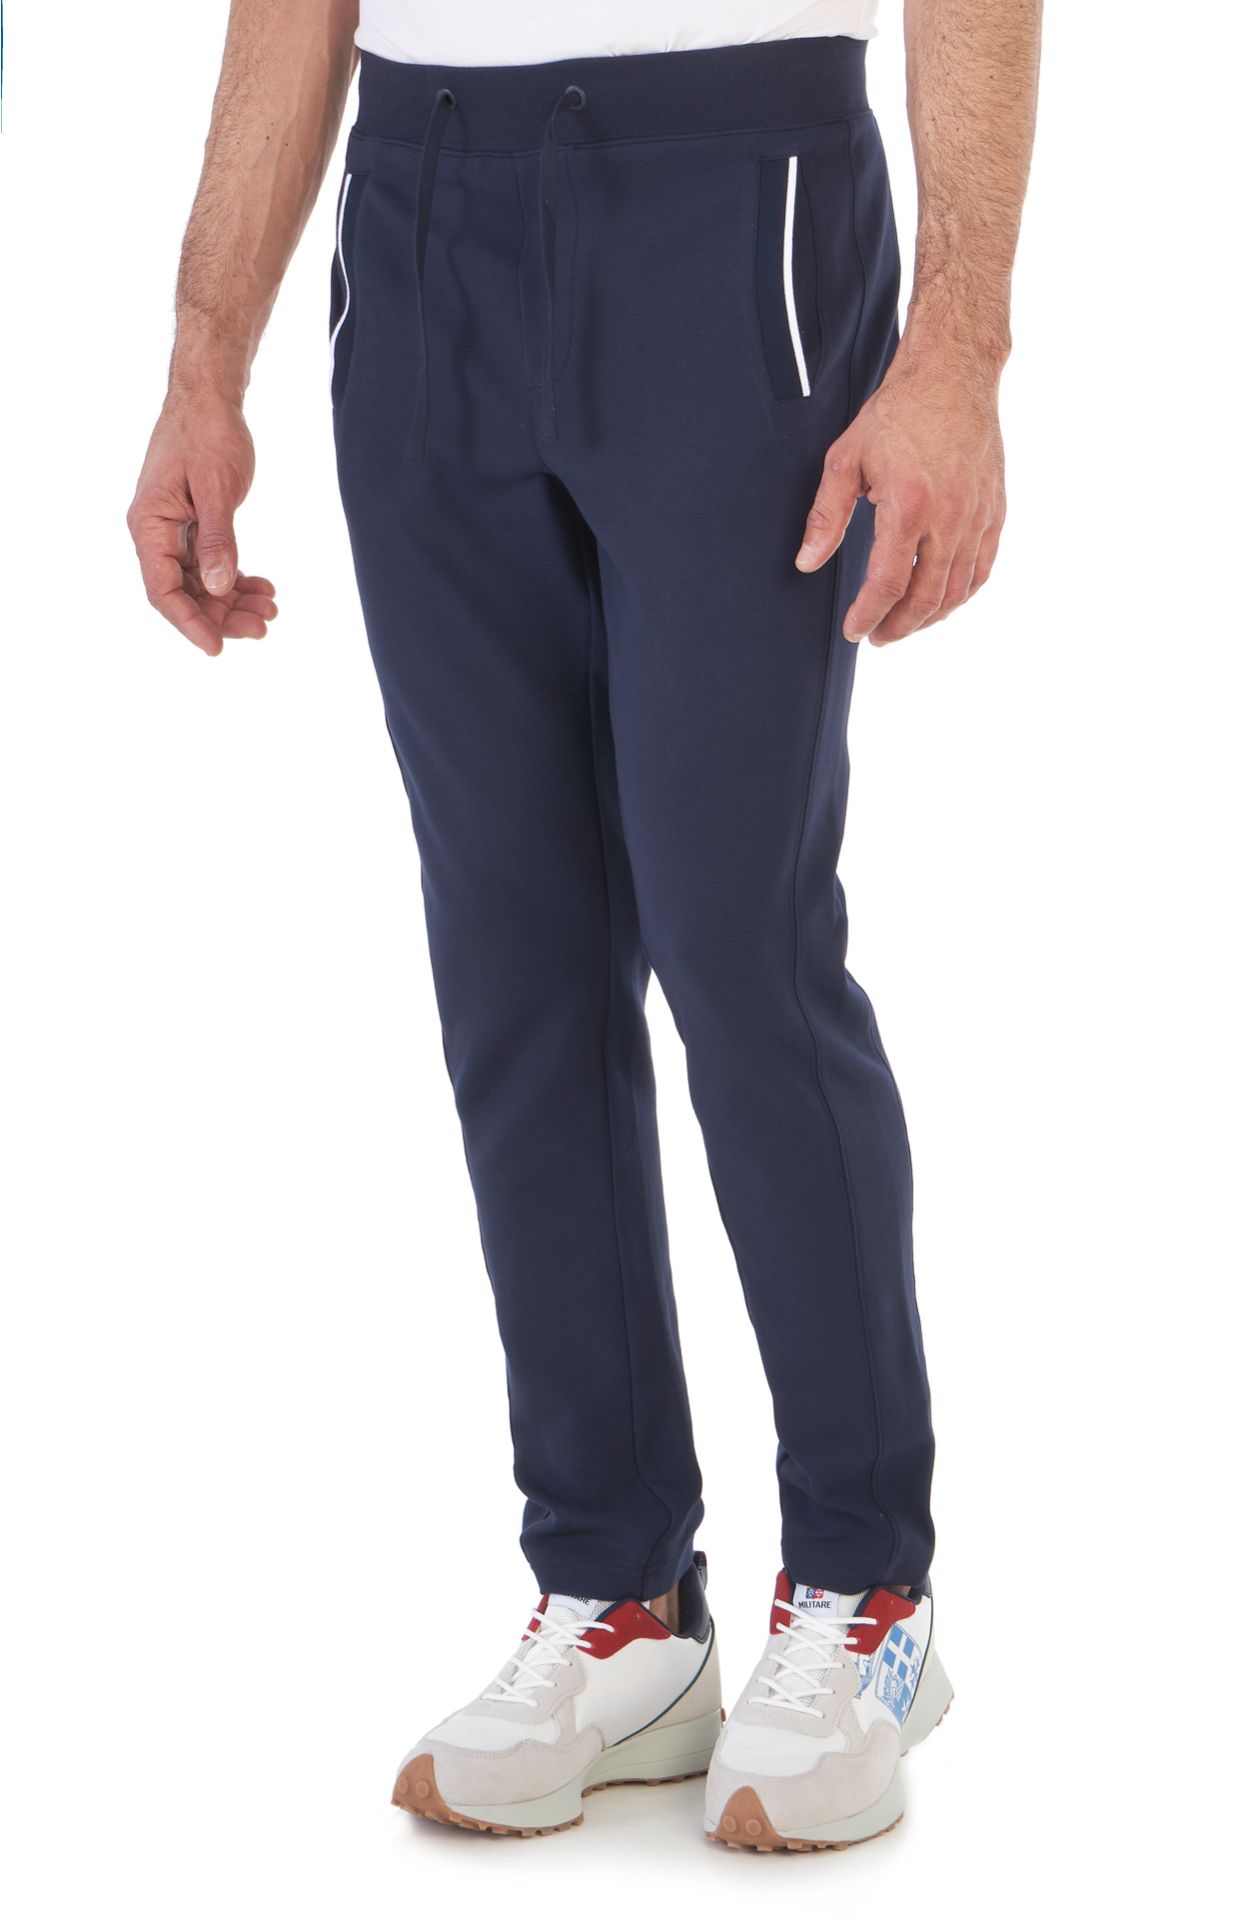 Amerigo Vespucci overalls trousers